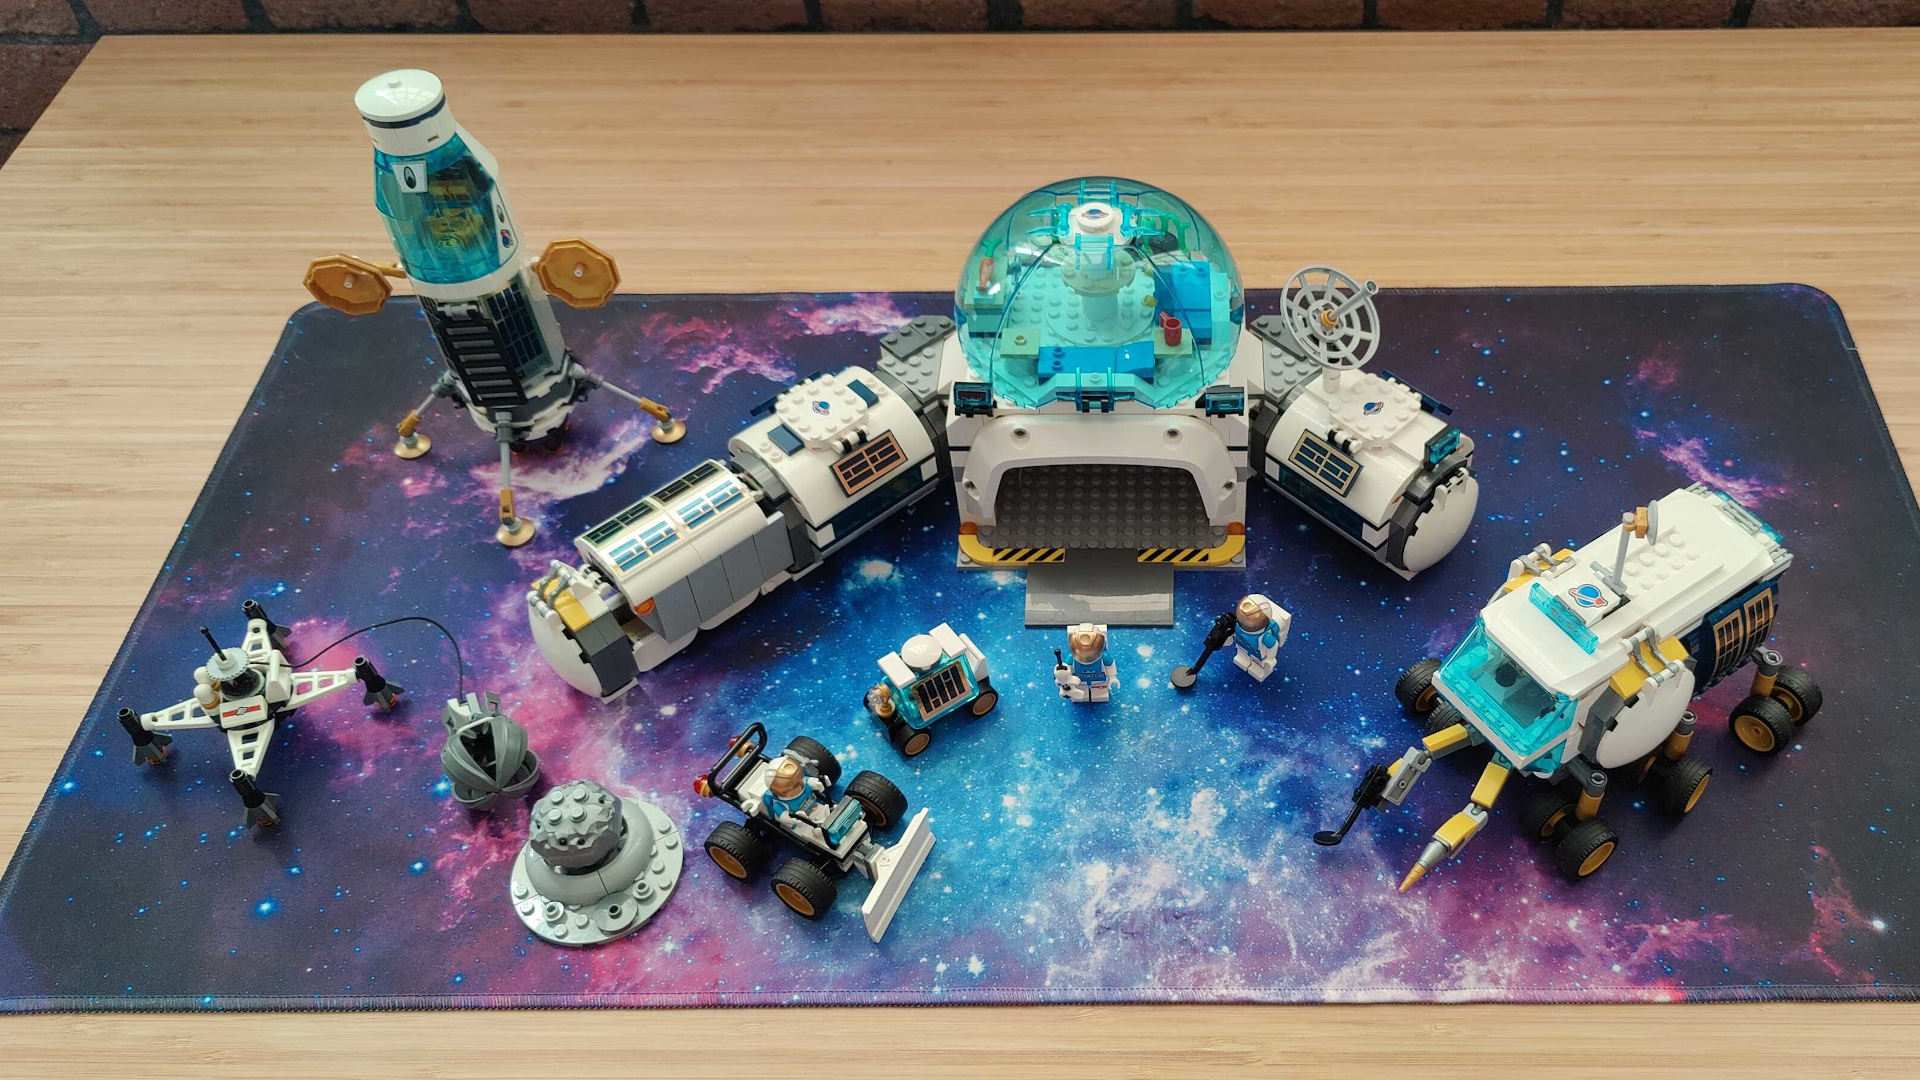 Odds løn skruenøgle Blast off for less with 20% off LEGO City Lunar sets at Walmart | Space